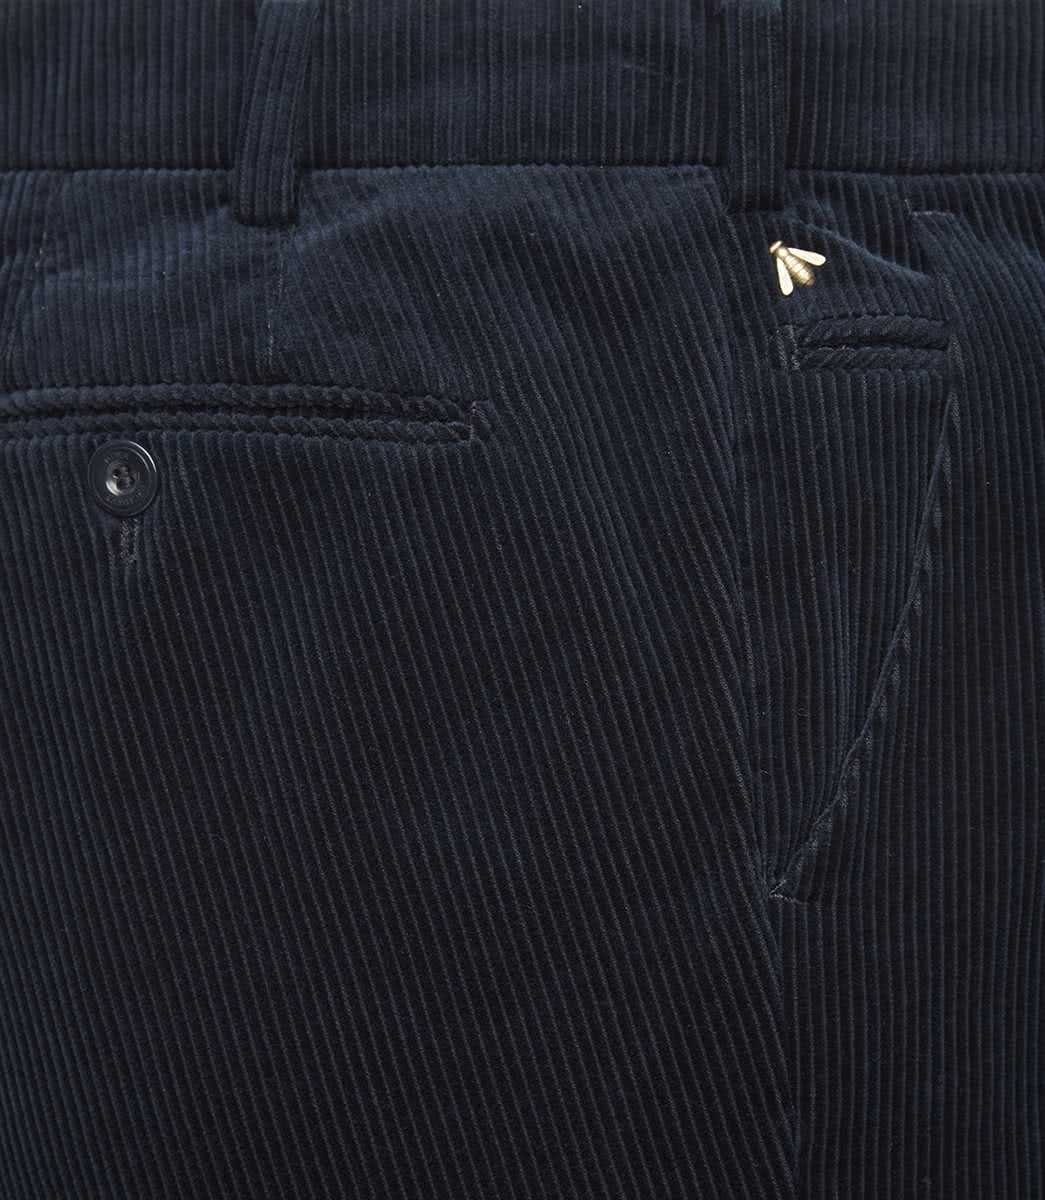 Herren Jeans MEYER 5-Pocket-Jeans MEYER EXCLUSIVE BONN dark marine 2-8549-19 - PREMI